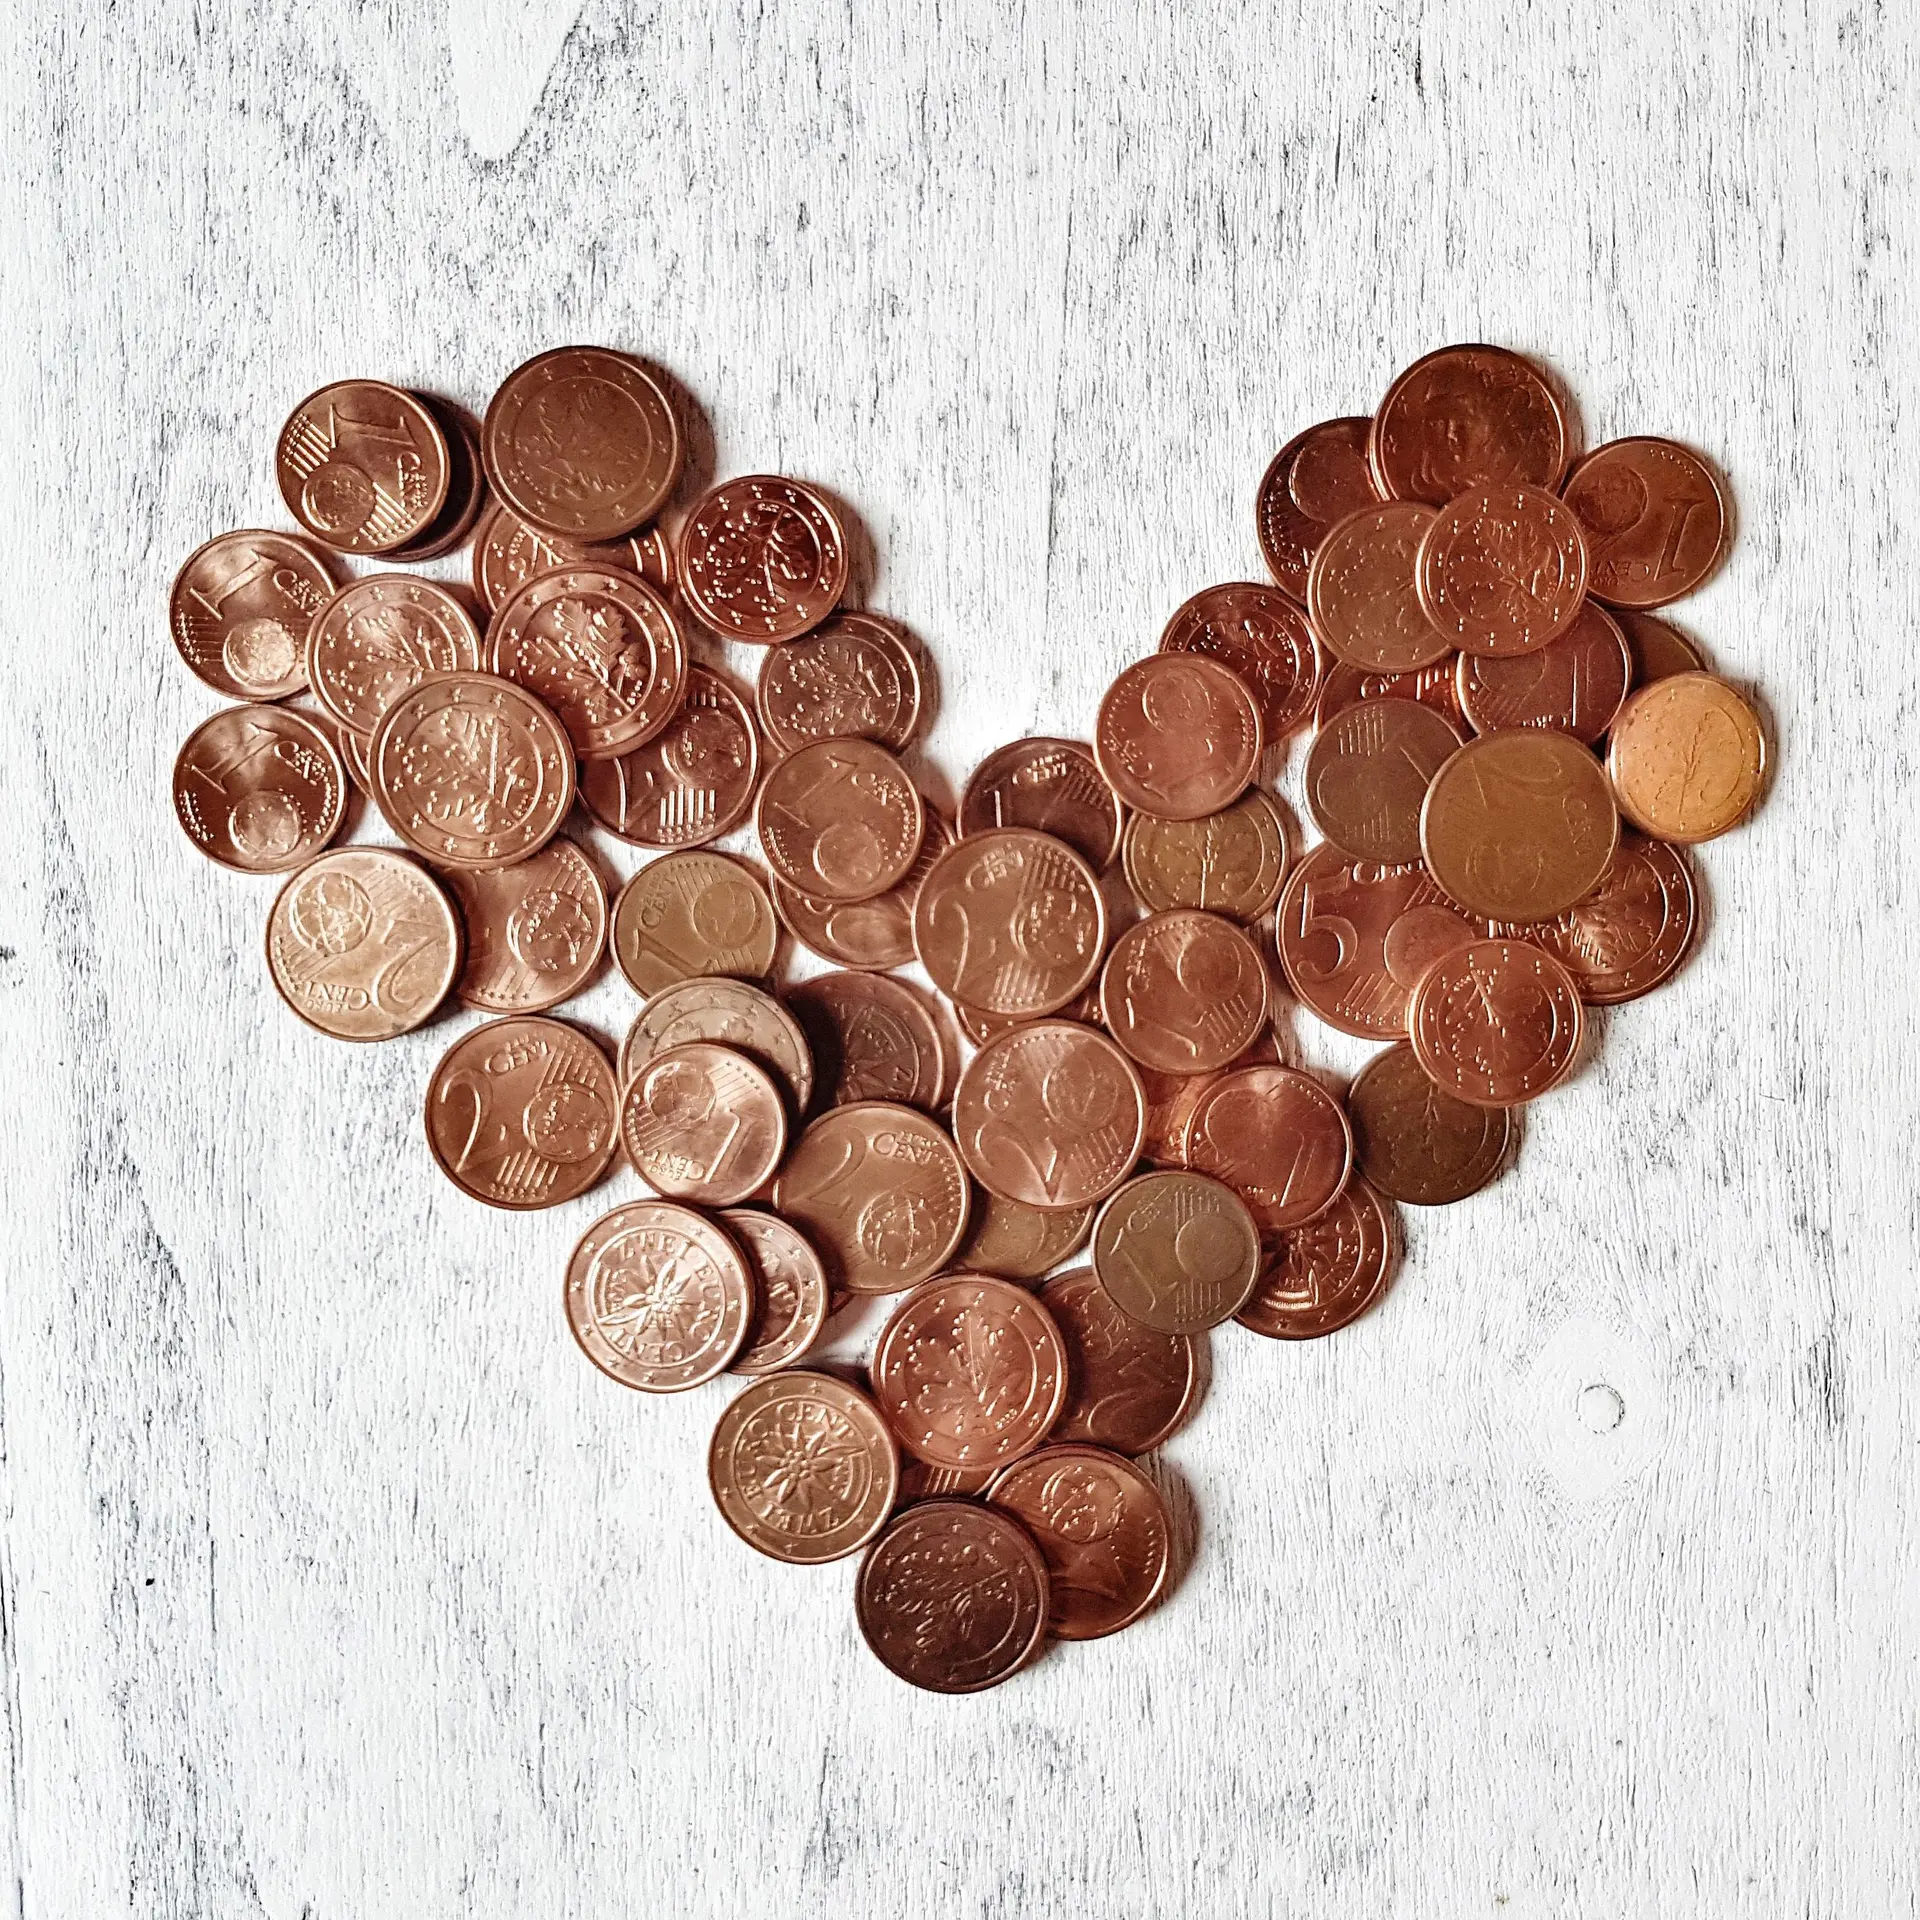 Nahaufnahme von Cent-Münzen in Herzform auf einem hellen Holzuntergrund angeordnet.